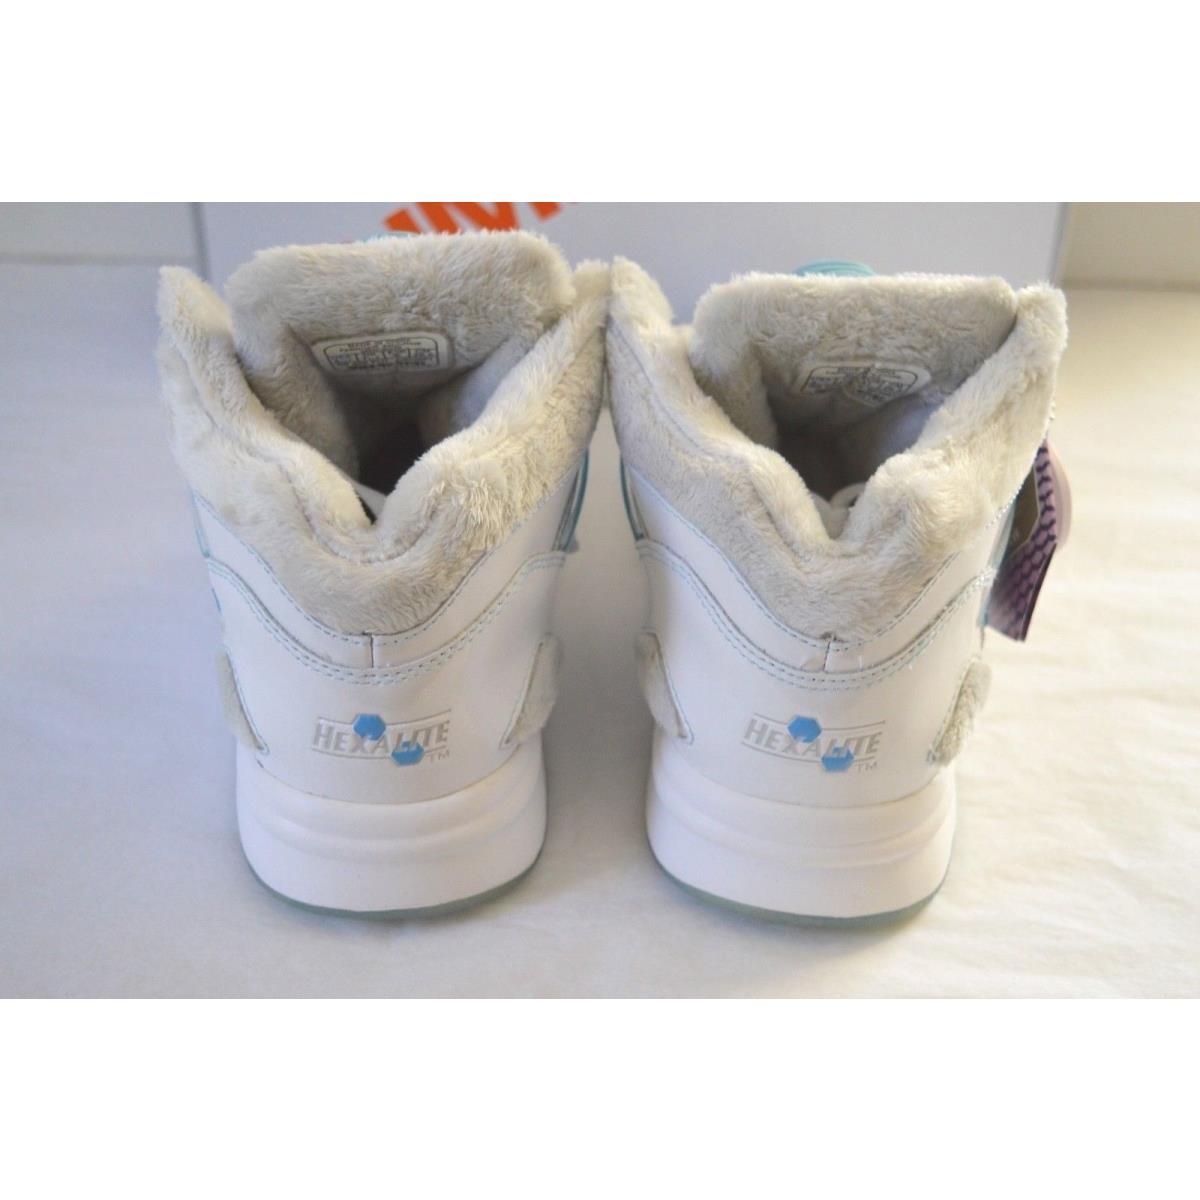 Reebok shoes  - White 2